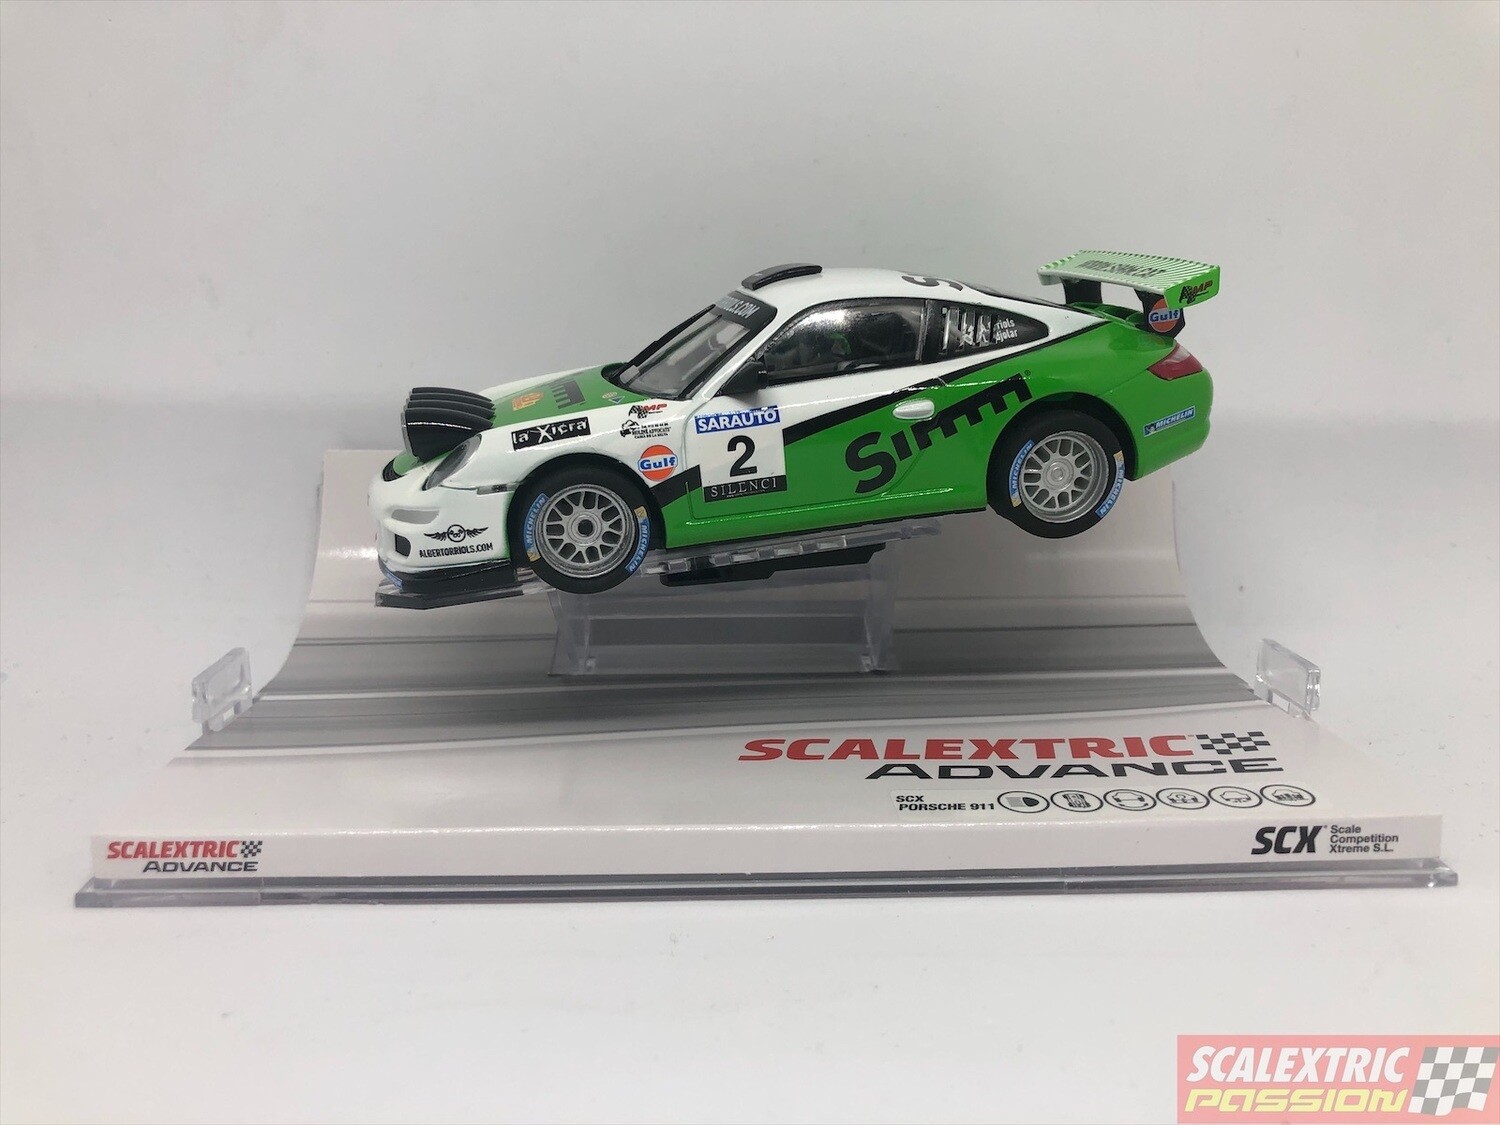 Scalextric Advance 1.0 E10332S300 Porsche 911 Rally Orriols [E10332S300] -  59,00€ : , Comprar, ofertas y descuentos